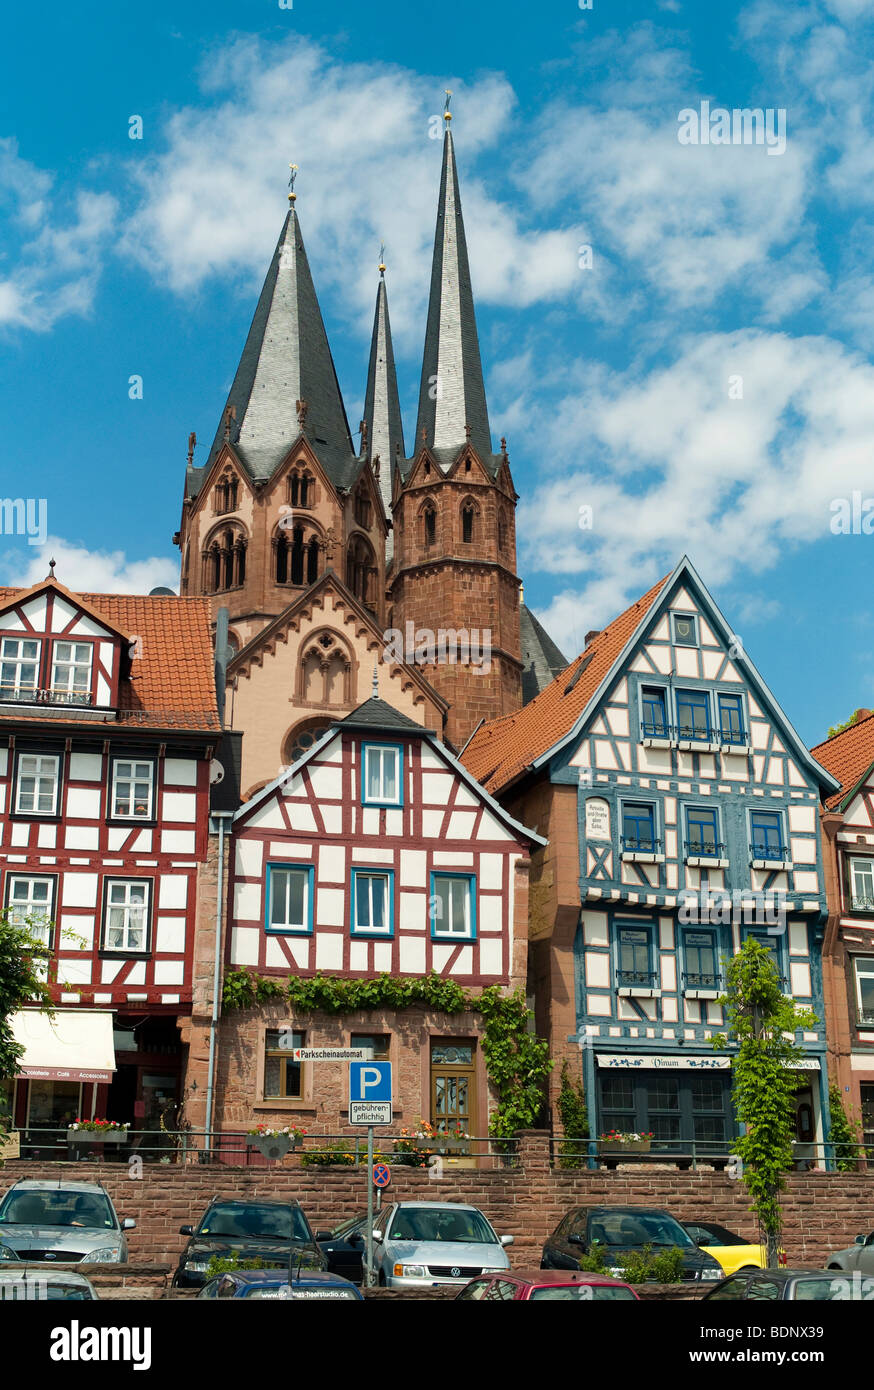 Maisons à colombages, l'Église Marienkirche dans le dos, monument de Gelnhausen, Hesse, Germany, Europe Banque D'Images